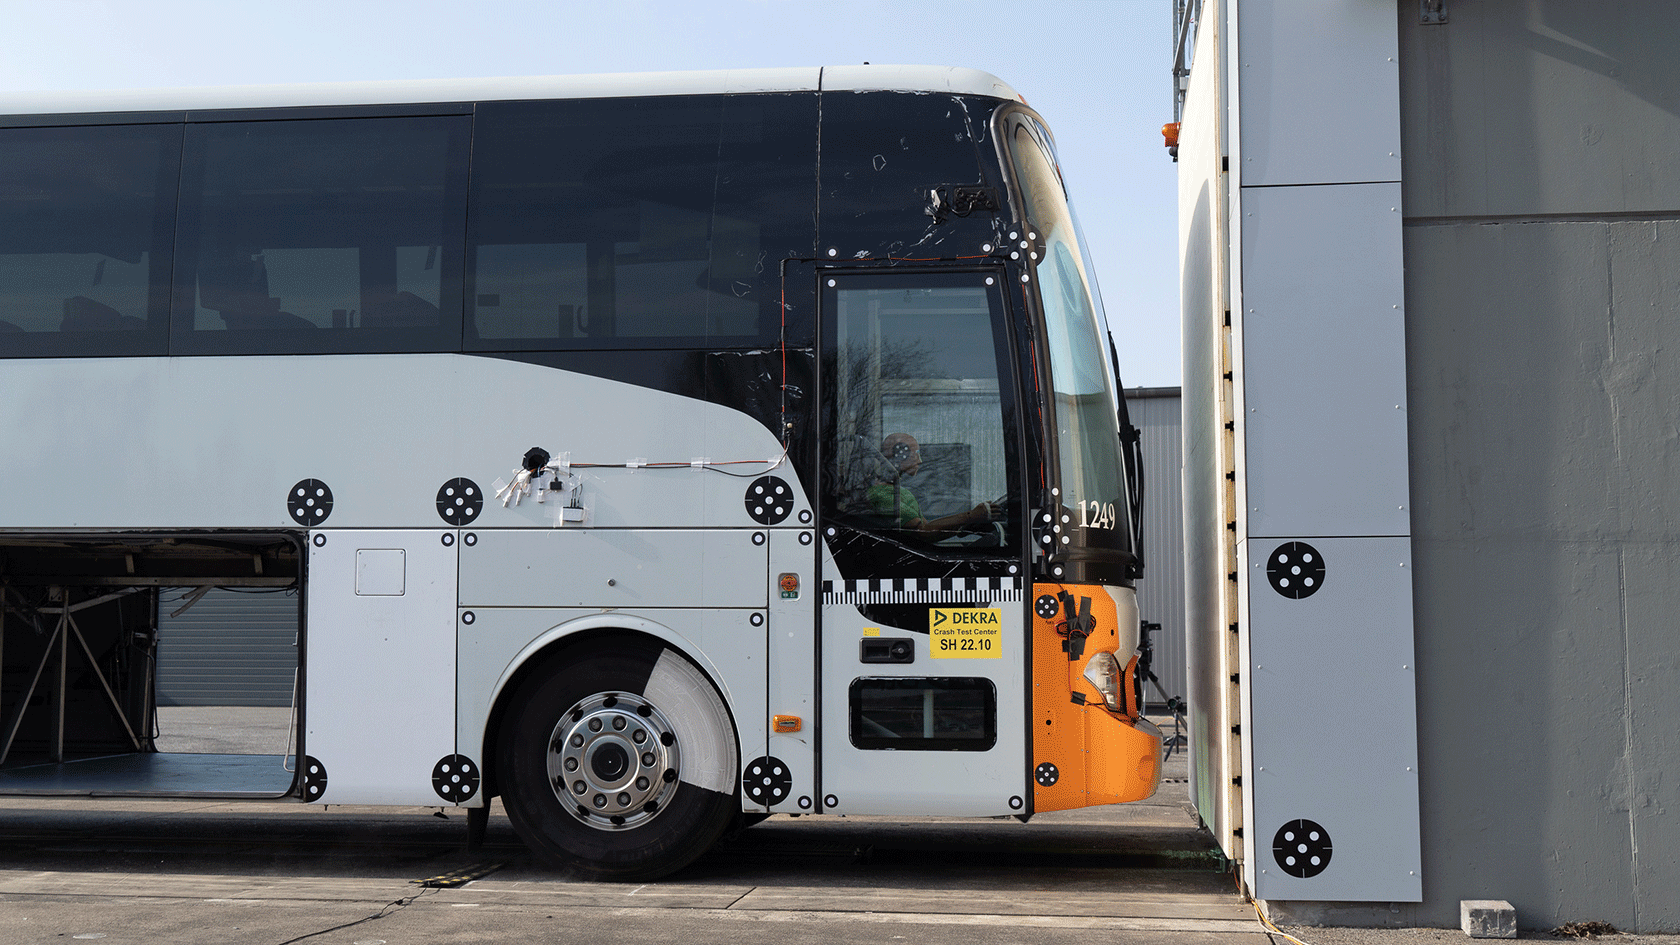 Wypadek dla większego bezpieczeństwa. - Retrospekcja testu zderzeniowego autobusu Mercedes-Benz Tourrider dla Ameryki Północnej.